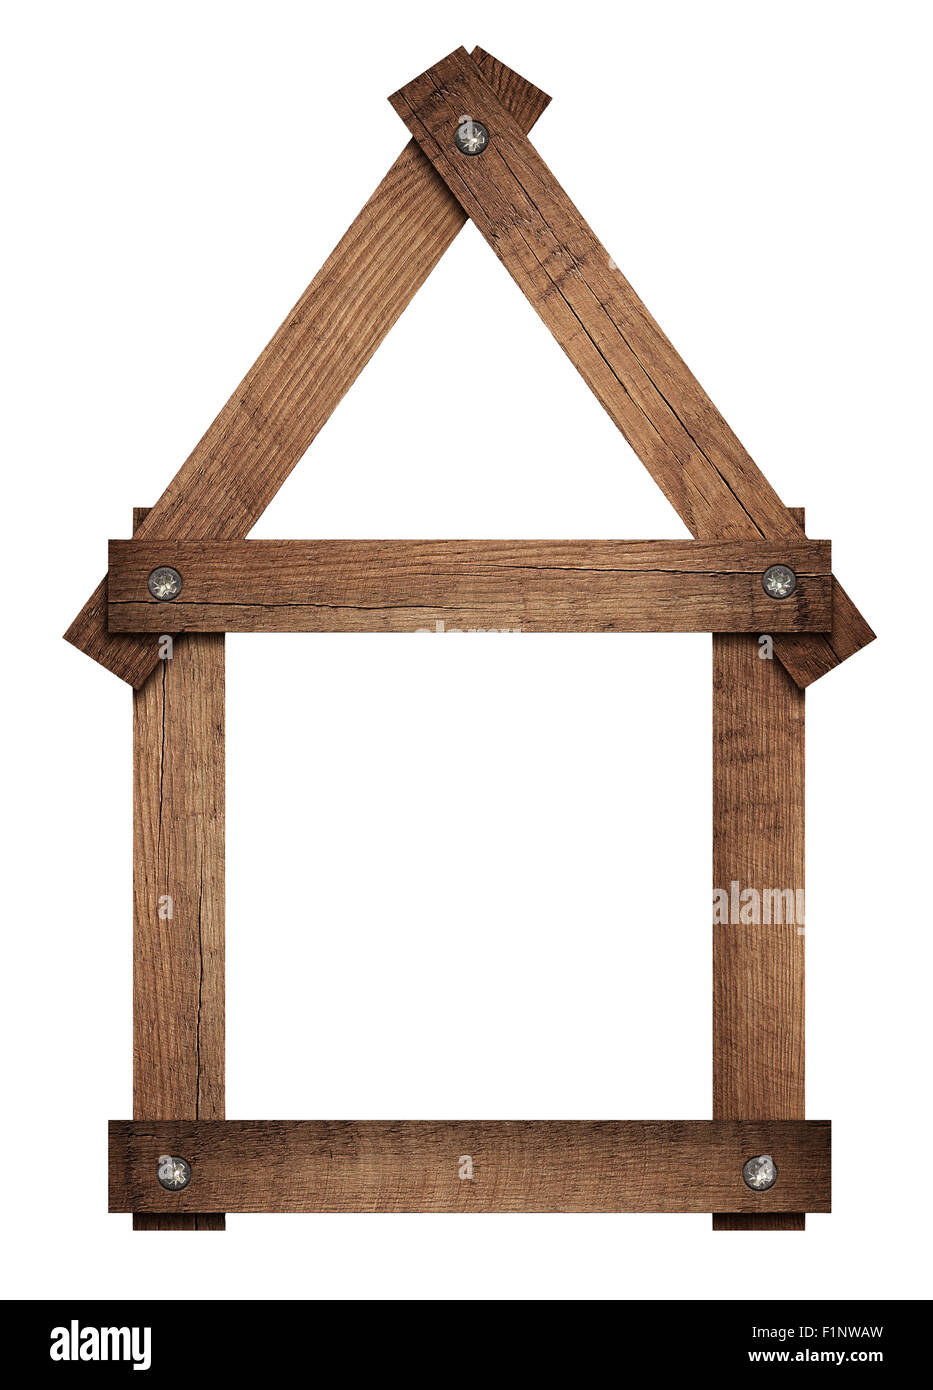 Holzhaus Startseitensymbol geschraubt Rahmen ist Solated auf weißem Hintergrund Stockfoto